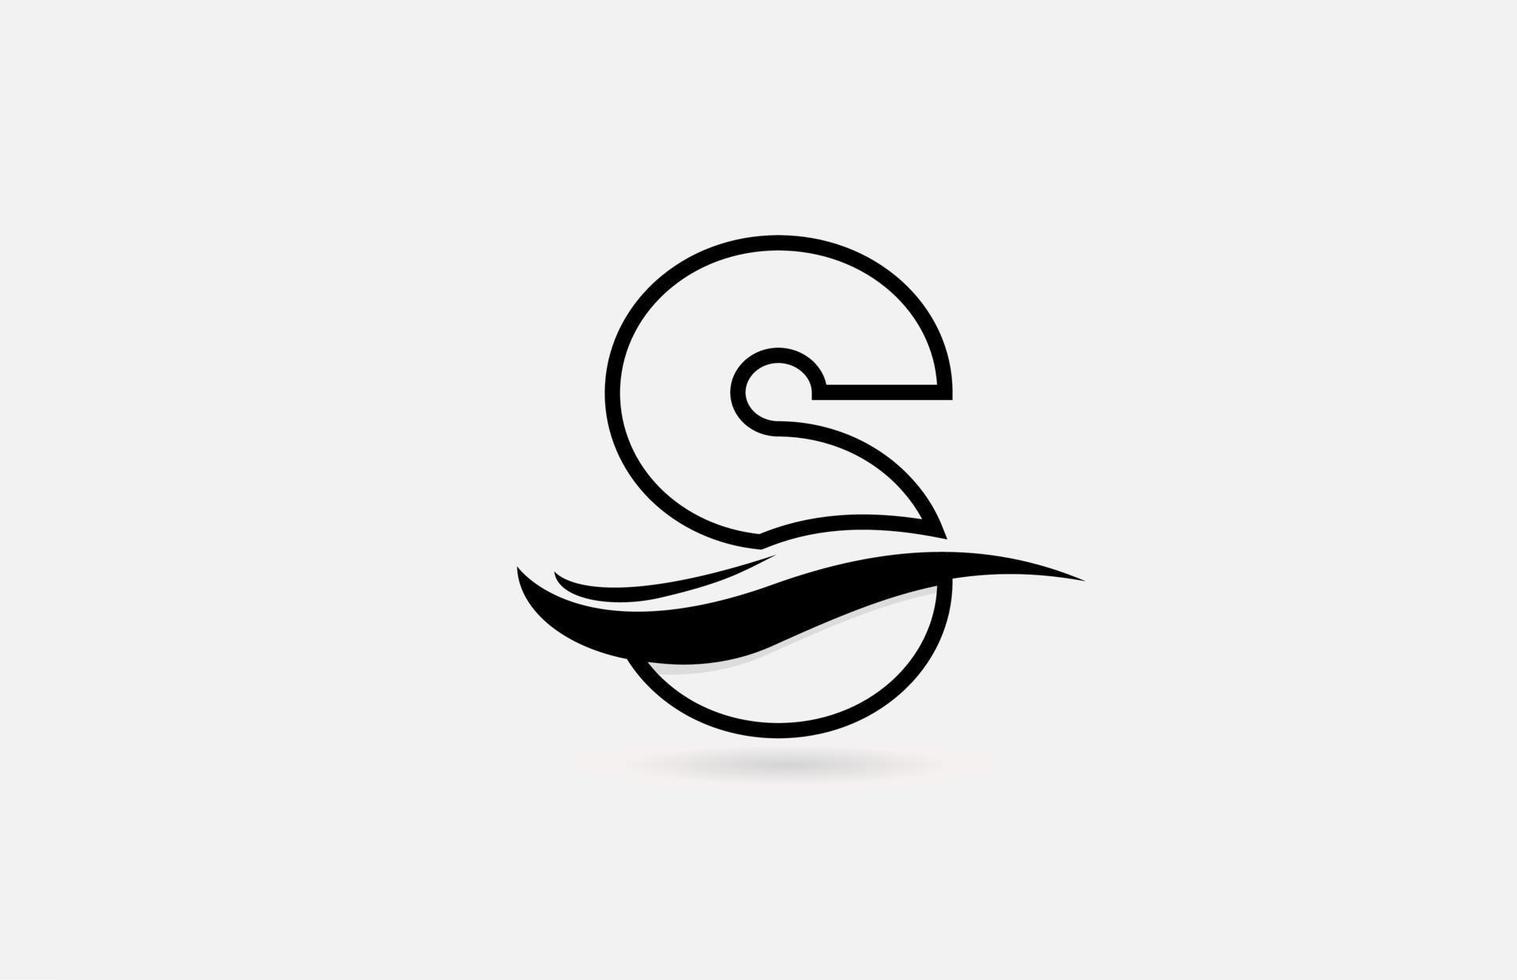 s Schwarz-Weiß-Alphabet-Logo-Symbol für Unternehmen und Unternehmen mit einfachem Liniendesign vektor